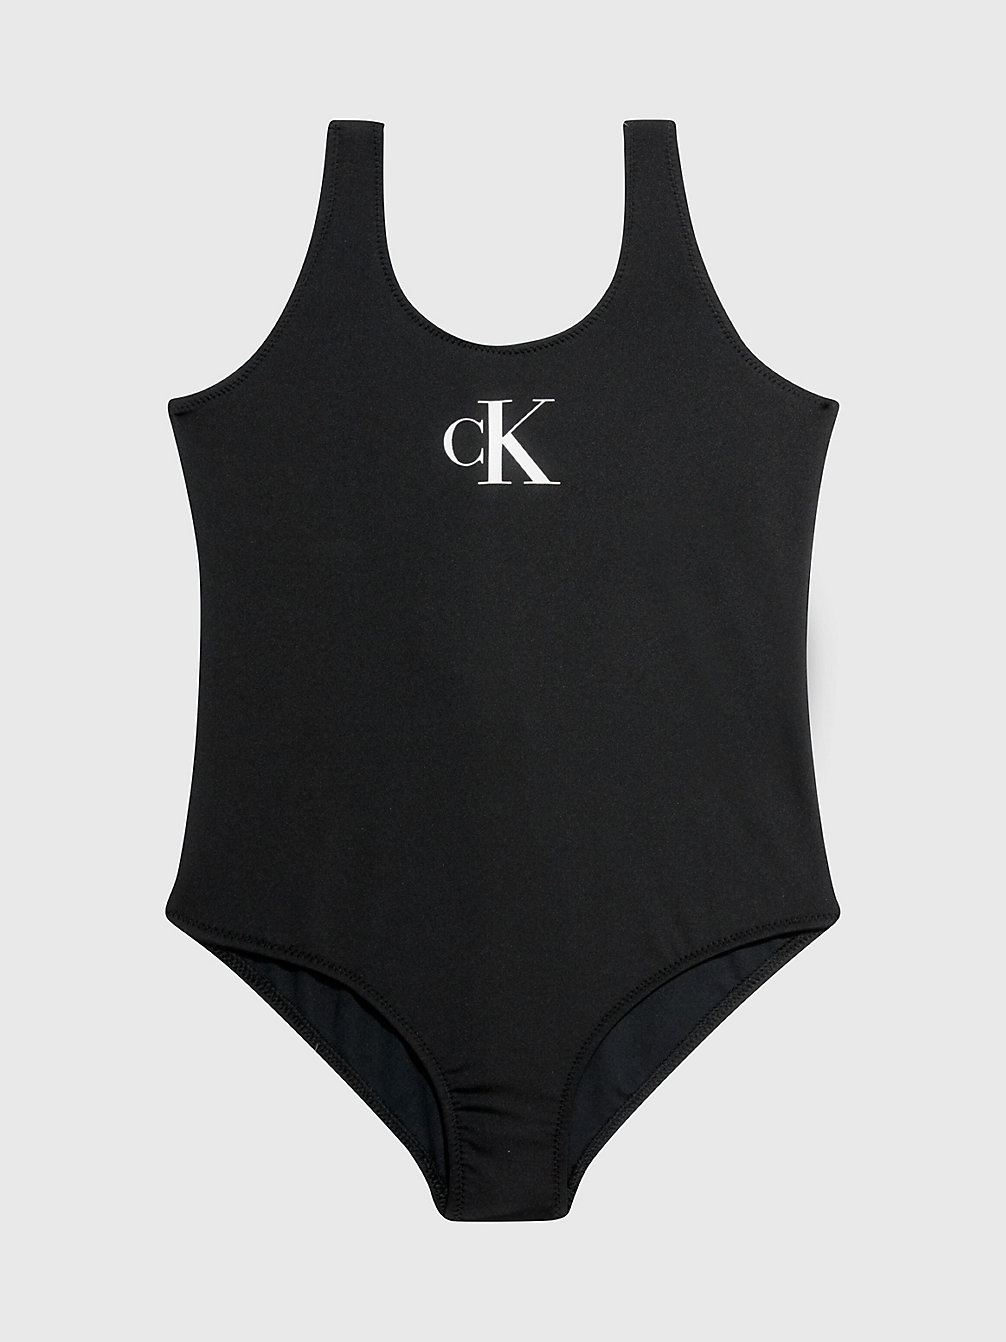 PVH BLACK Badeanzug Für Mädchen - CK Monogram undefined Maedchen Calvin Klein